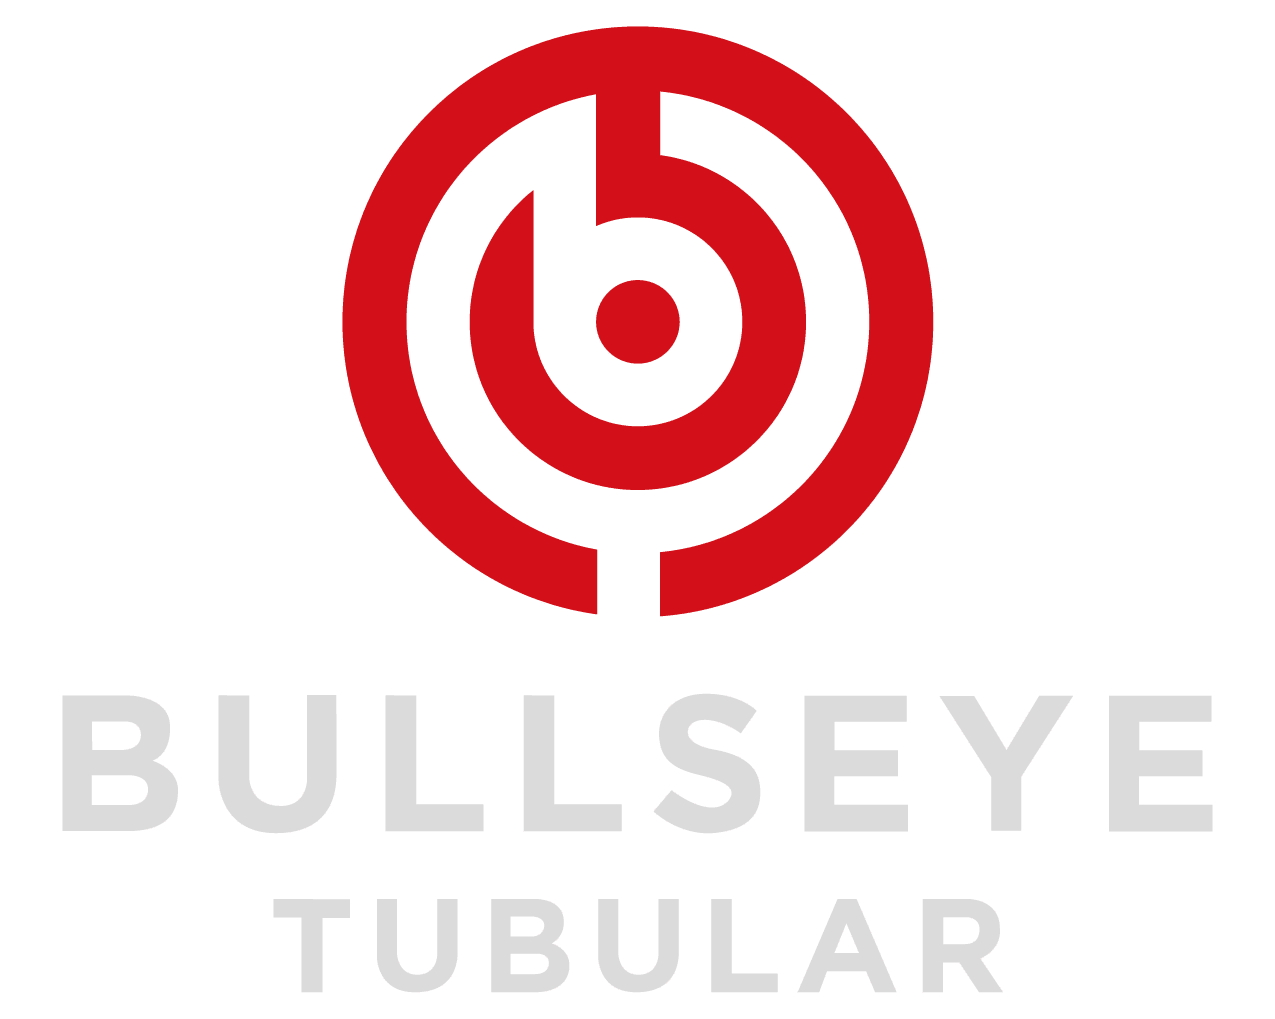 Bullseye Tubular Logo